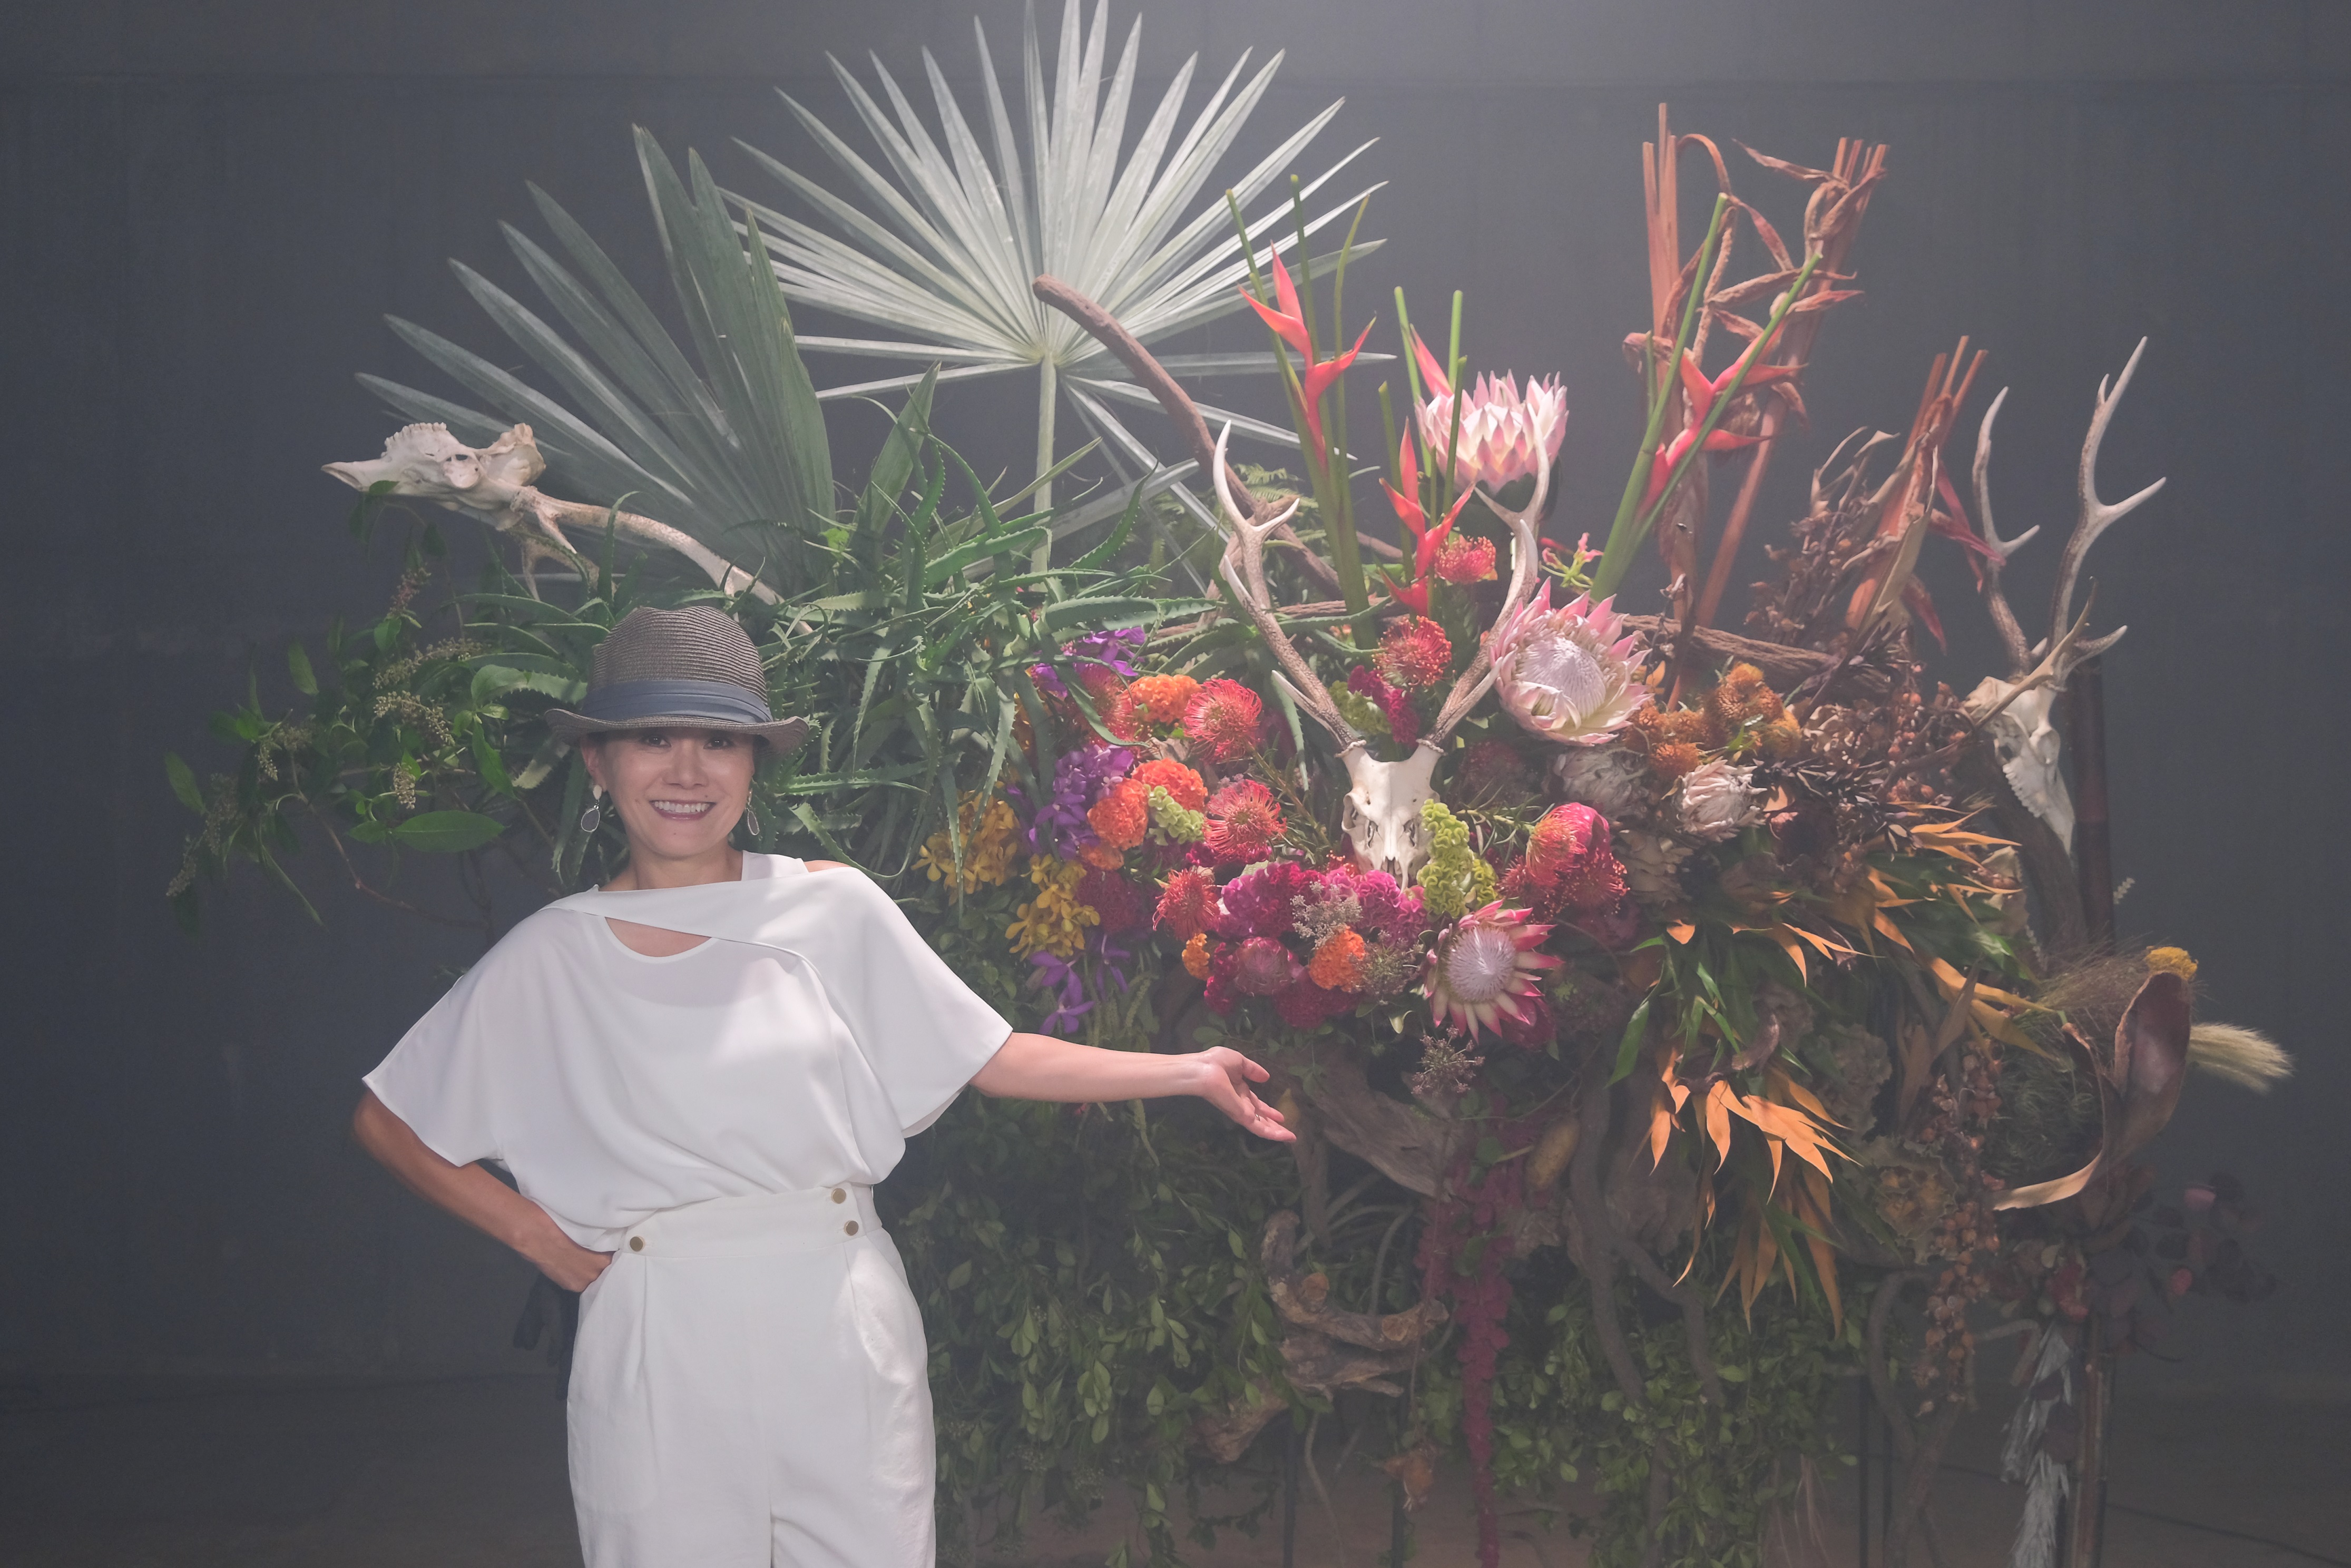 花はもっと 自由でいい フラワーアーティストtakai Yoshiko 舞台監督 新倉アレックスヴォーレン大助 初のオンラインストア Flor Libre Pvを公開 株式会社trescoのプレスリリース